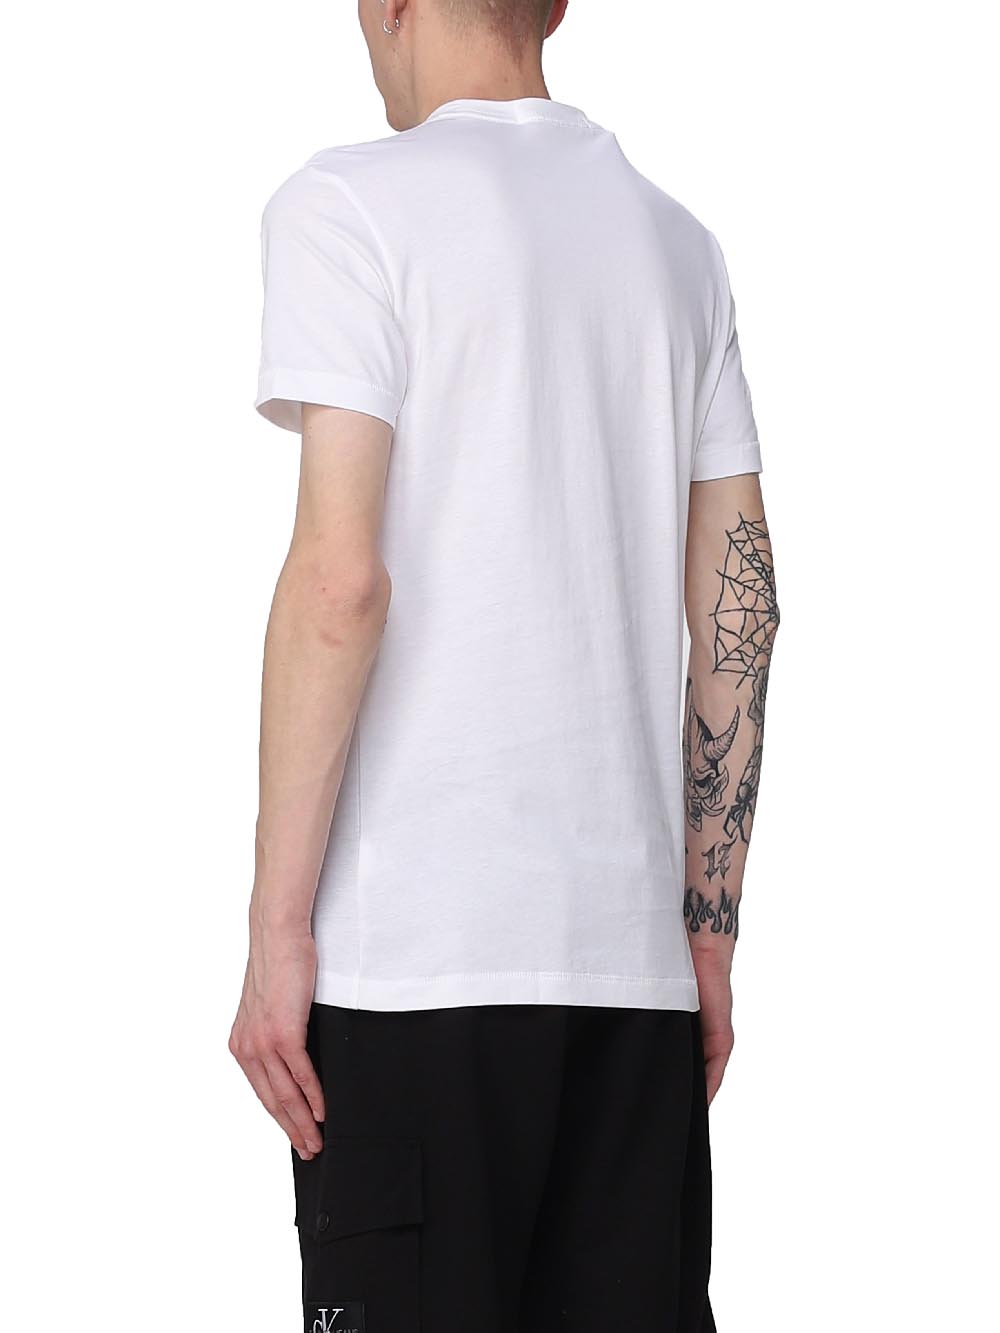 CALVIN KLEIN T-shirt Uomo Bianco